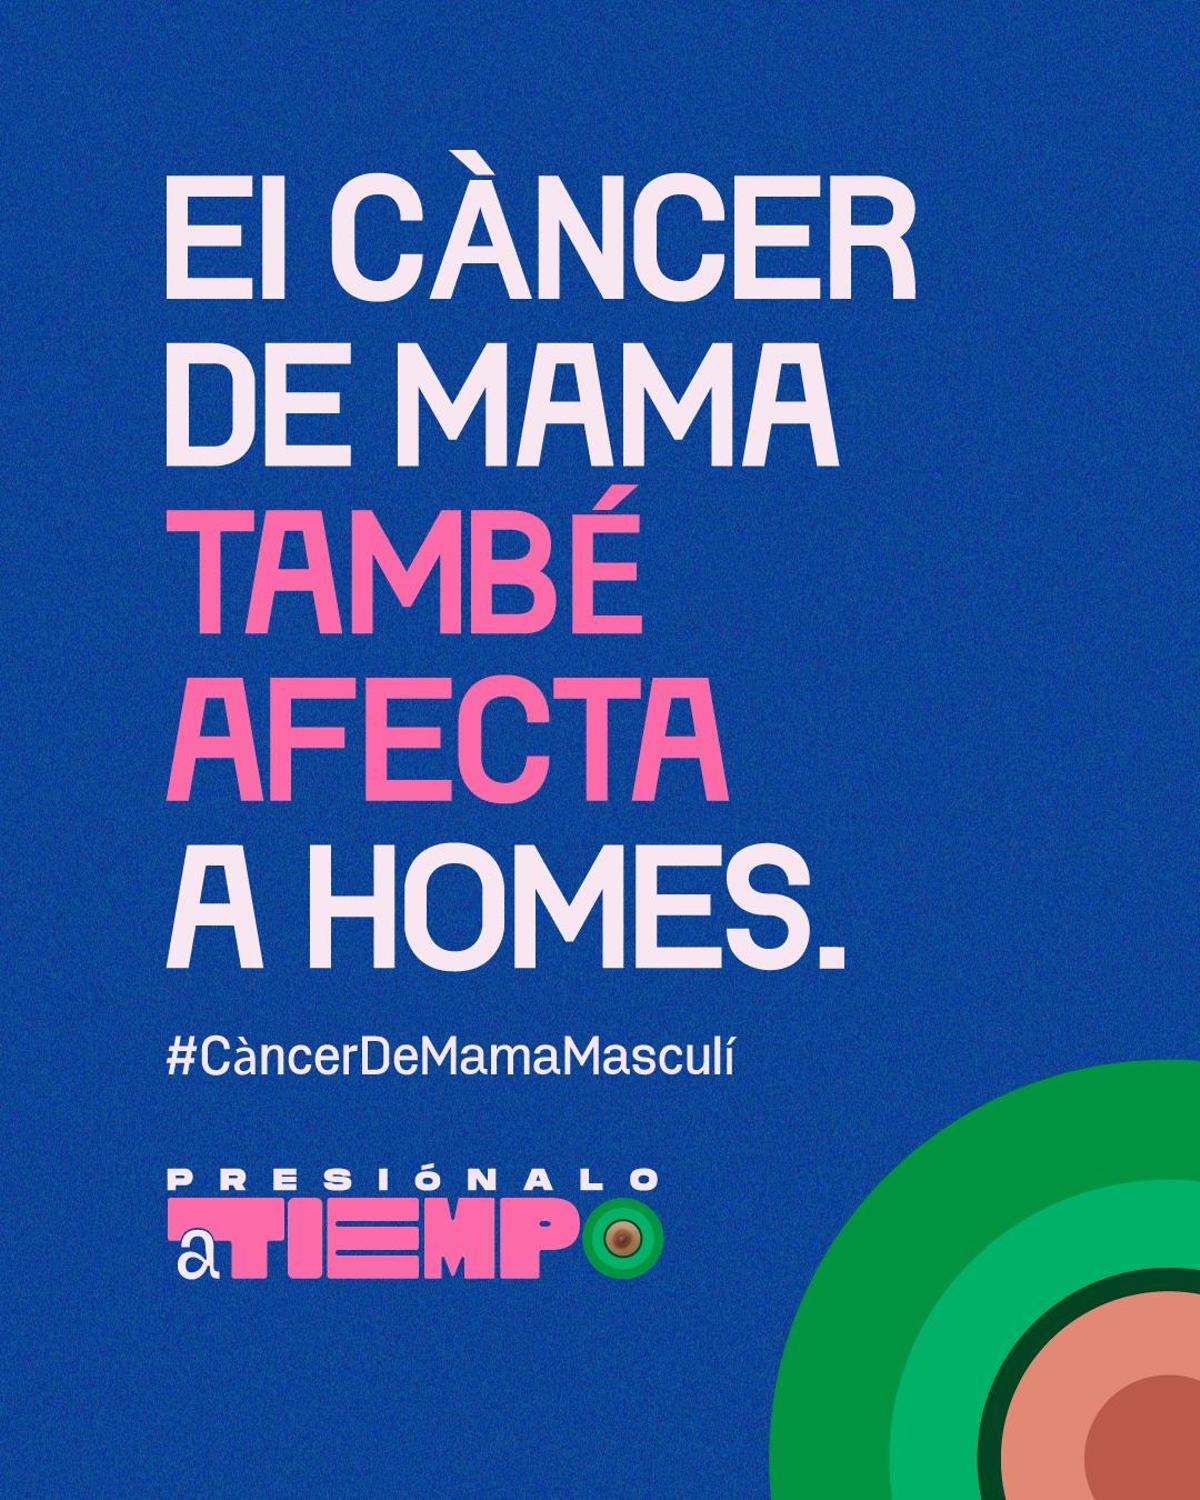 Mensaje de la campaña de concienciación el cáncer de mama masculino.